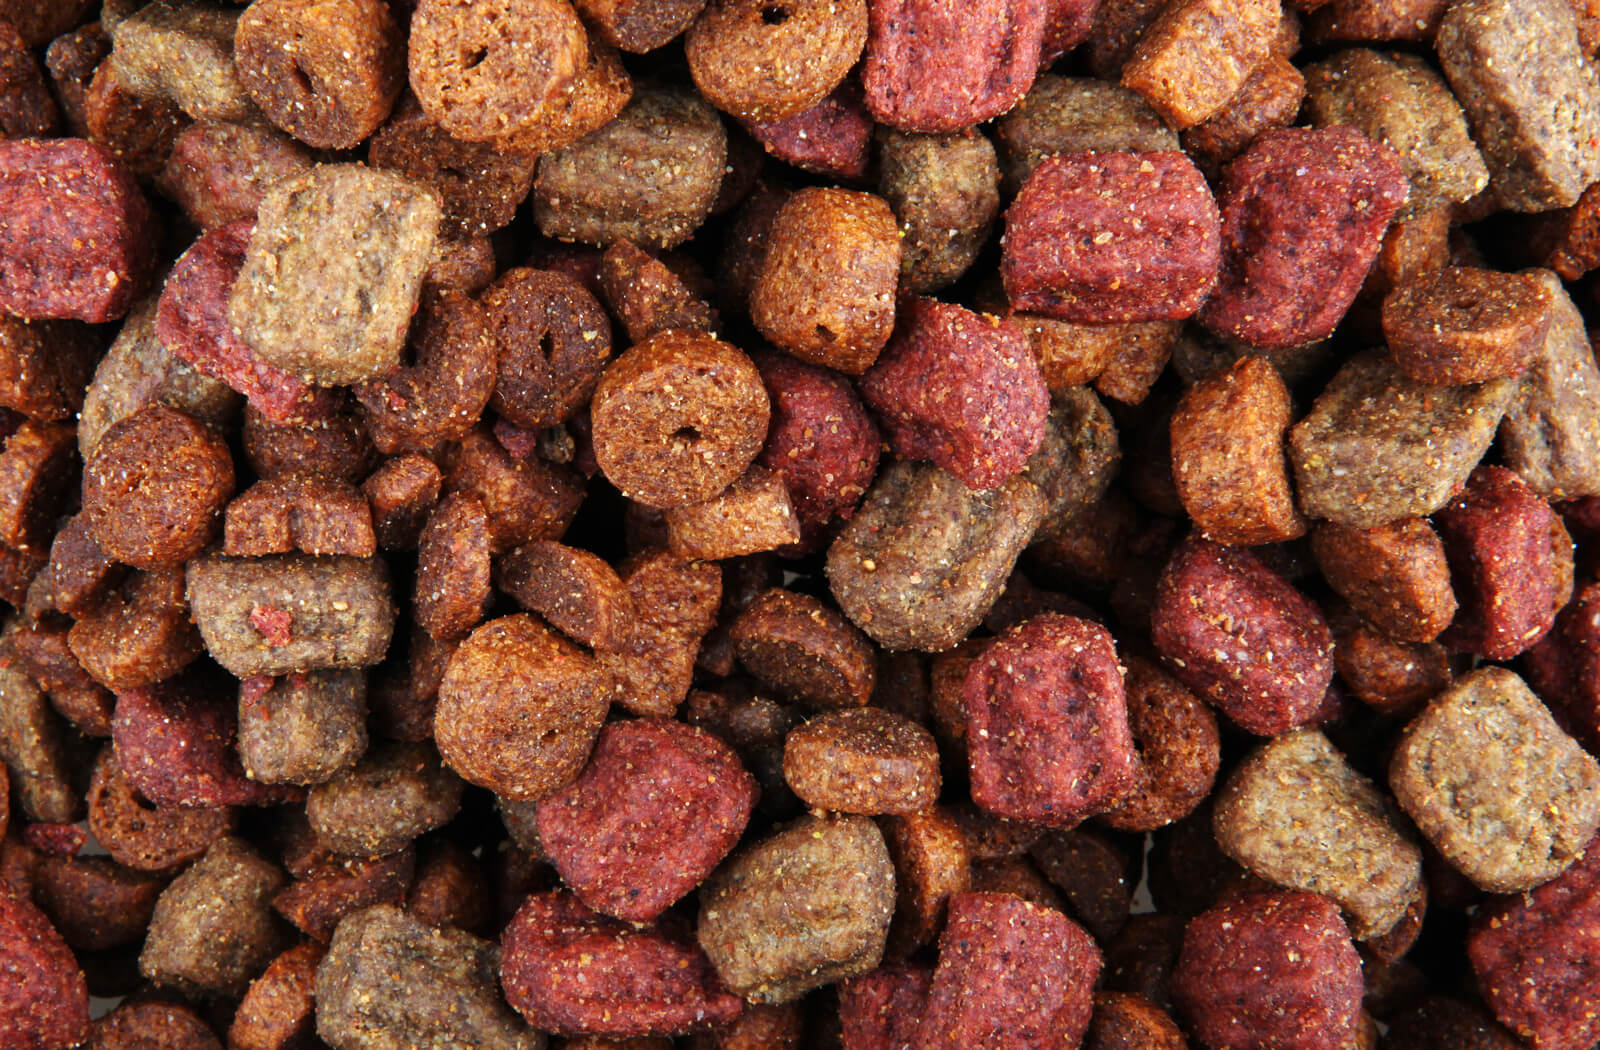 4b - Dog Food Closeup